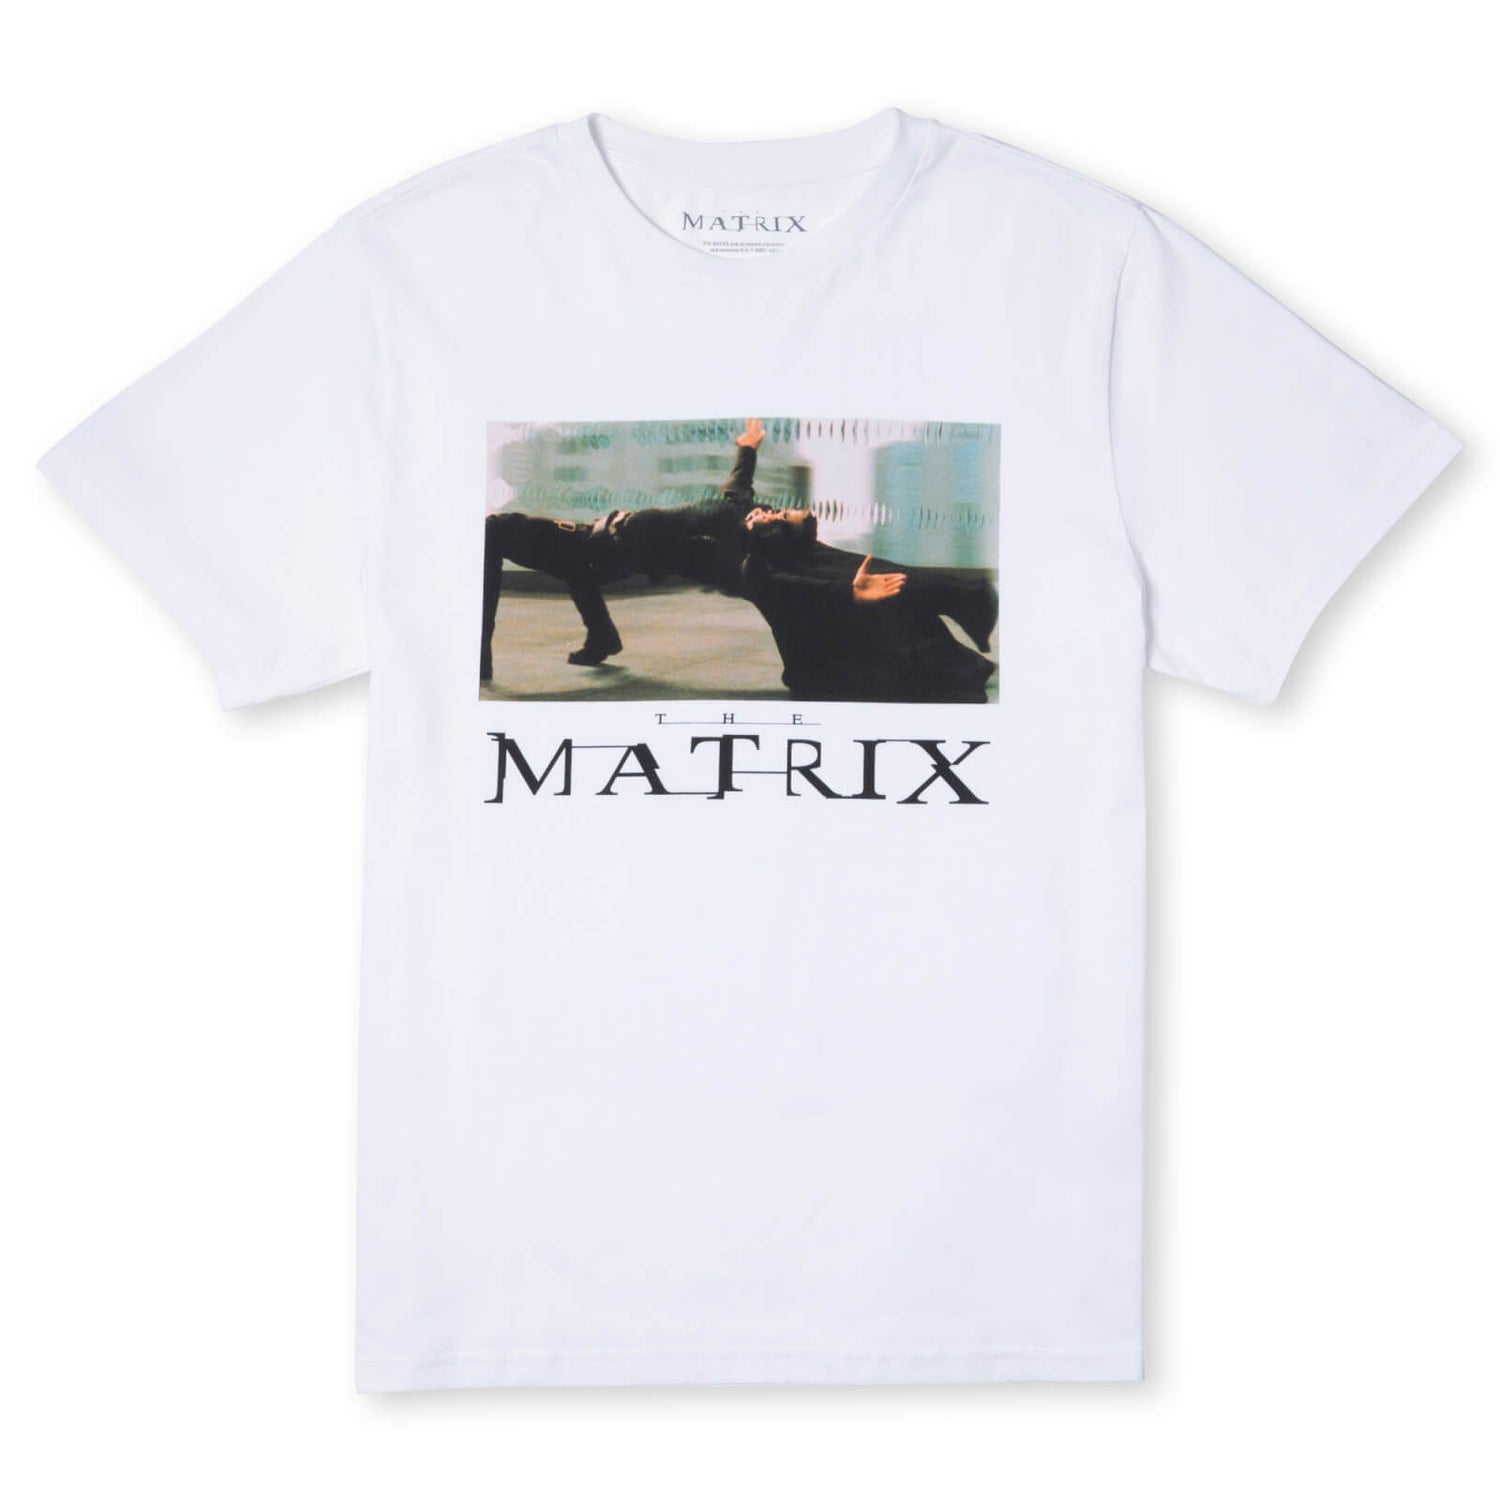 The Matrix Men's T-Shirt - White